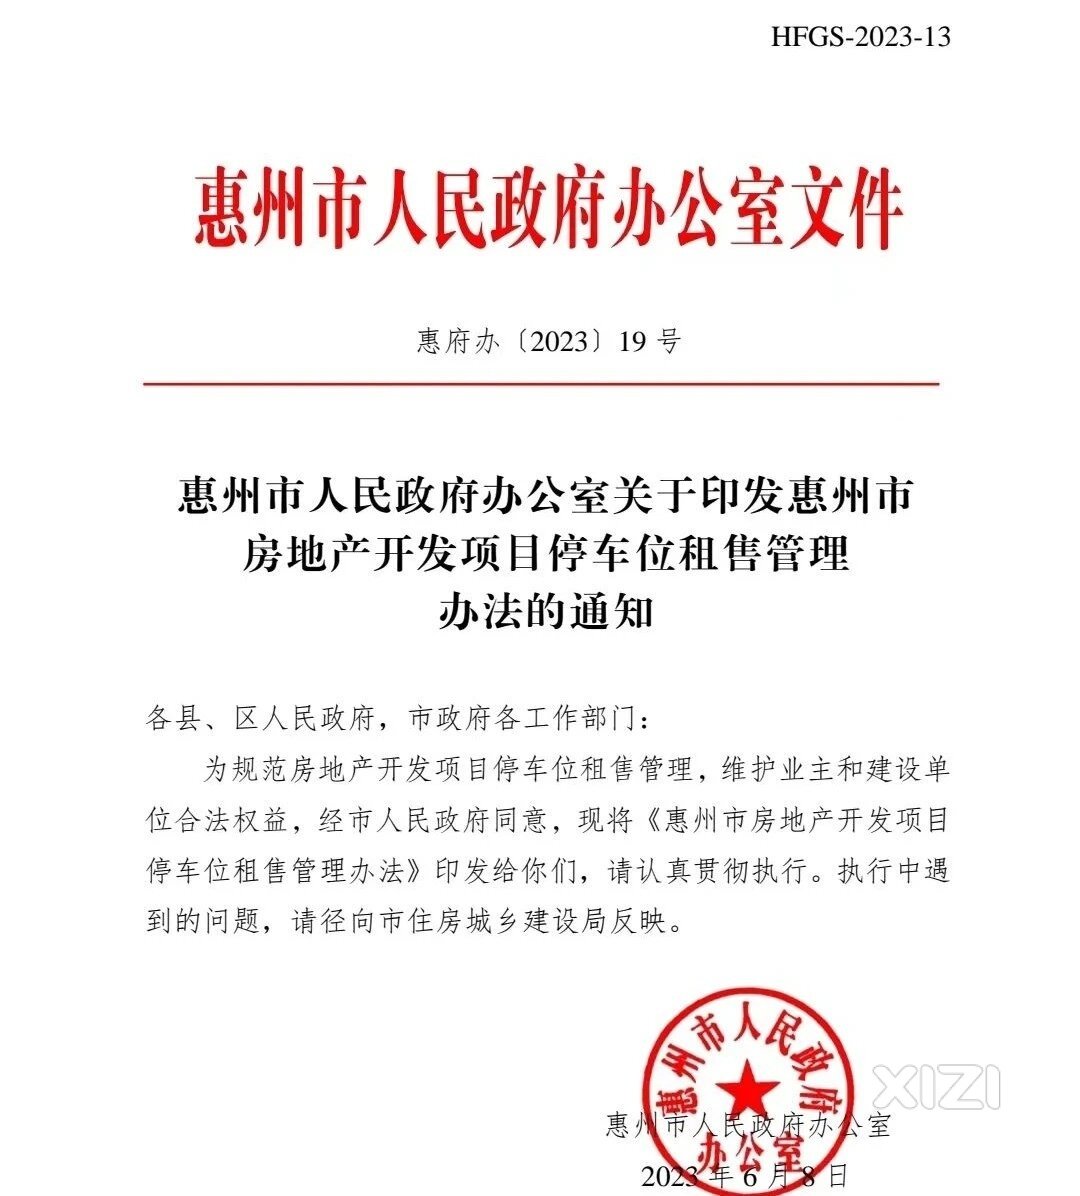 惠州停车位租售管理办法7月9日起执行，人防车位收益归开发商所有